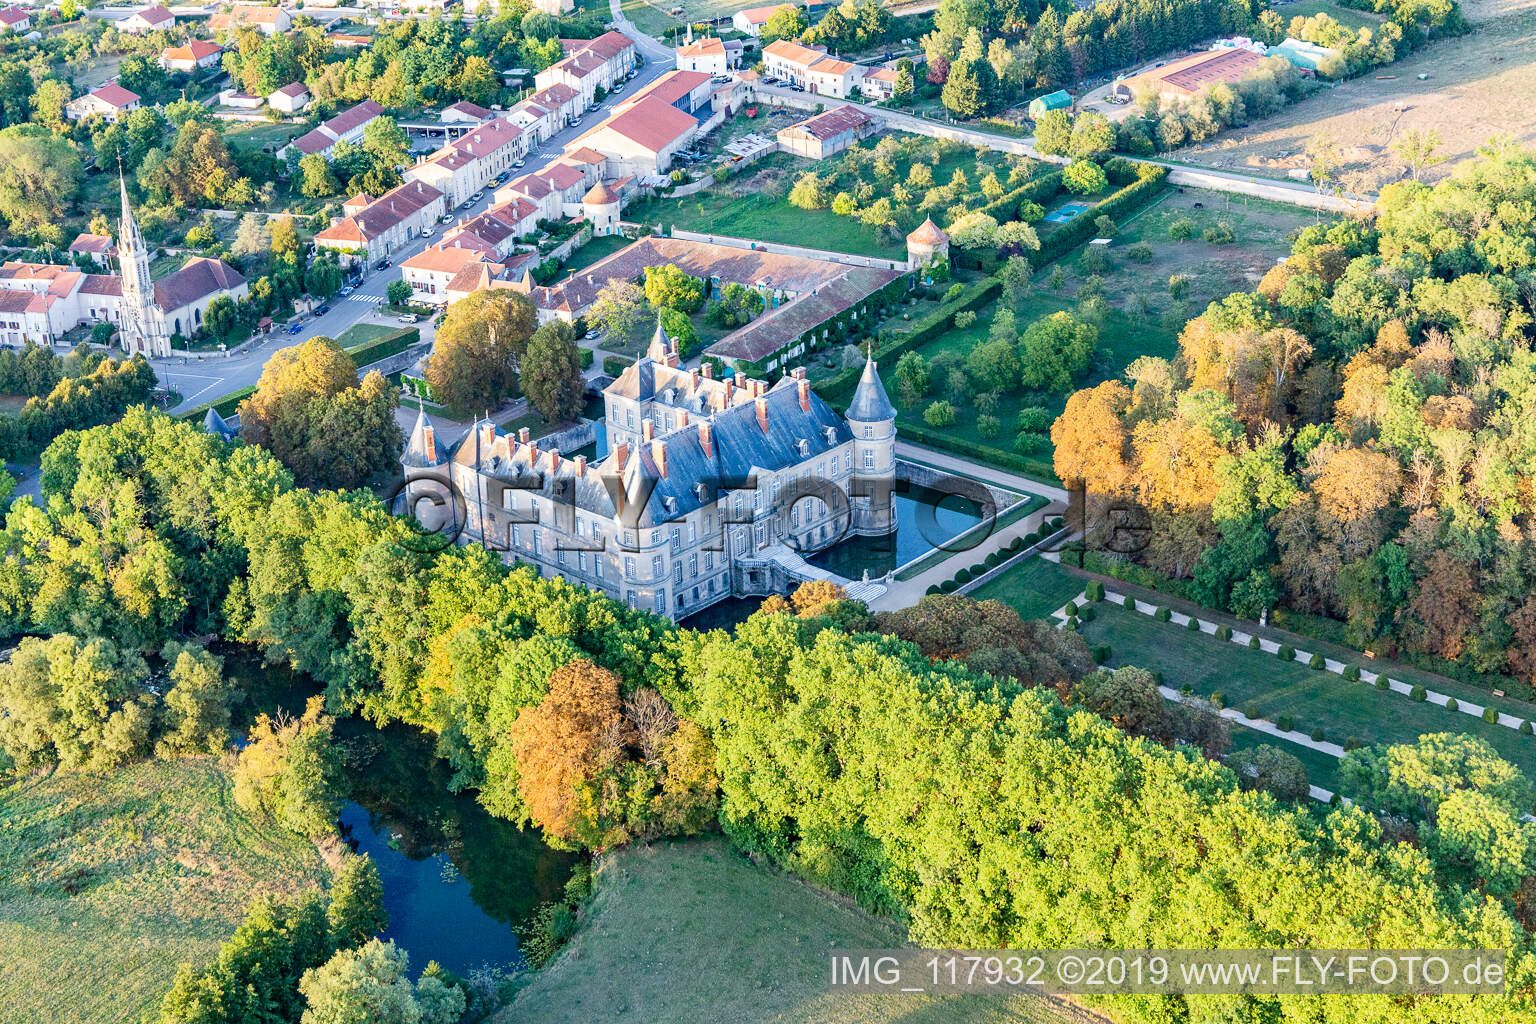 Chateau de Haroué im Bundesland Meurthe-et-Moselle, Frankreich von der Drohne aus gesehen